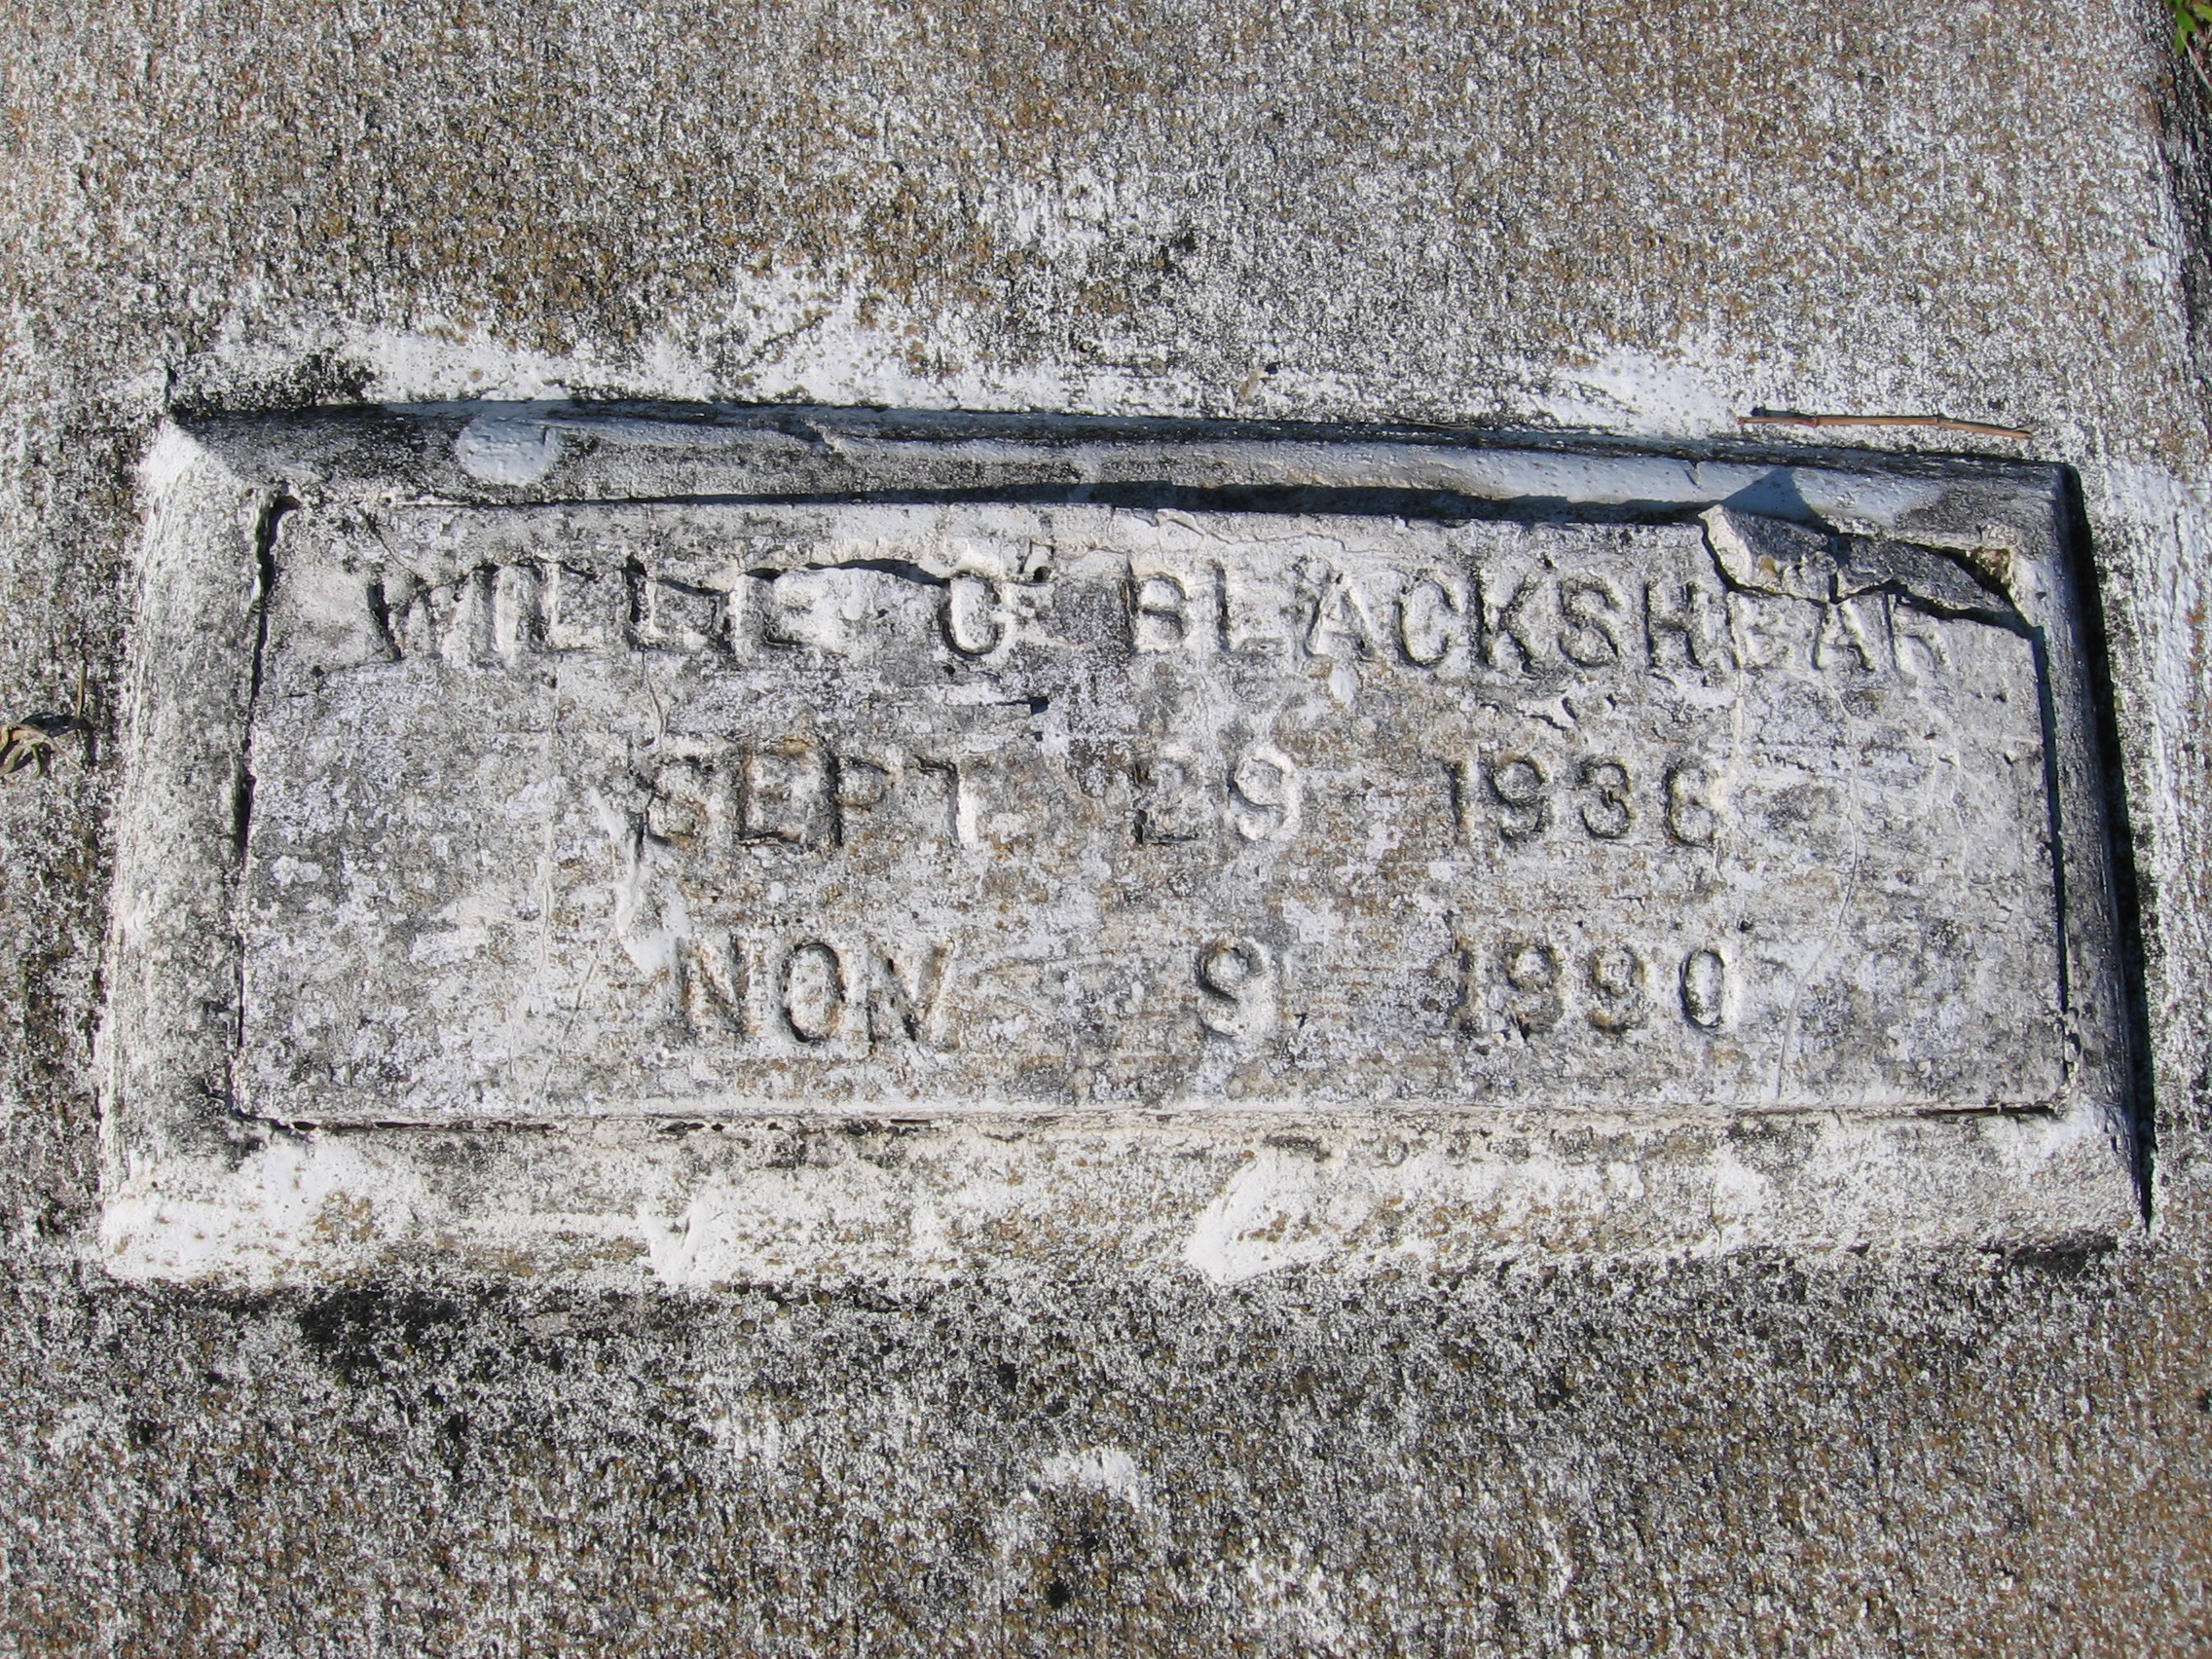 Willie C Blackshear